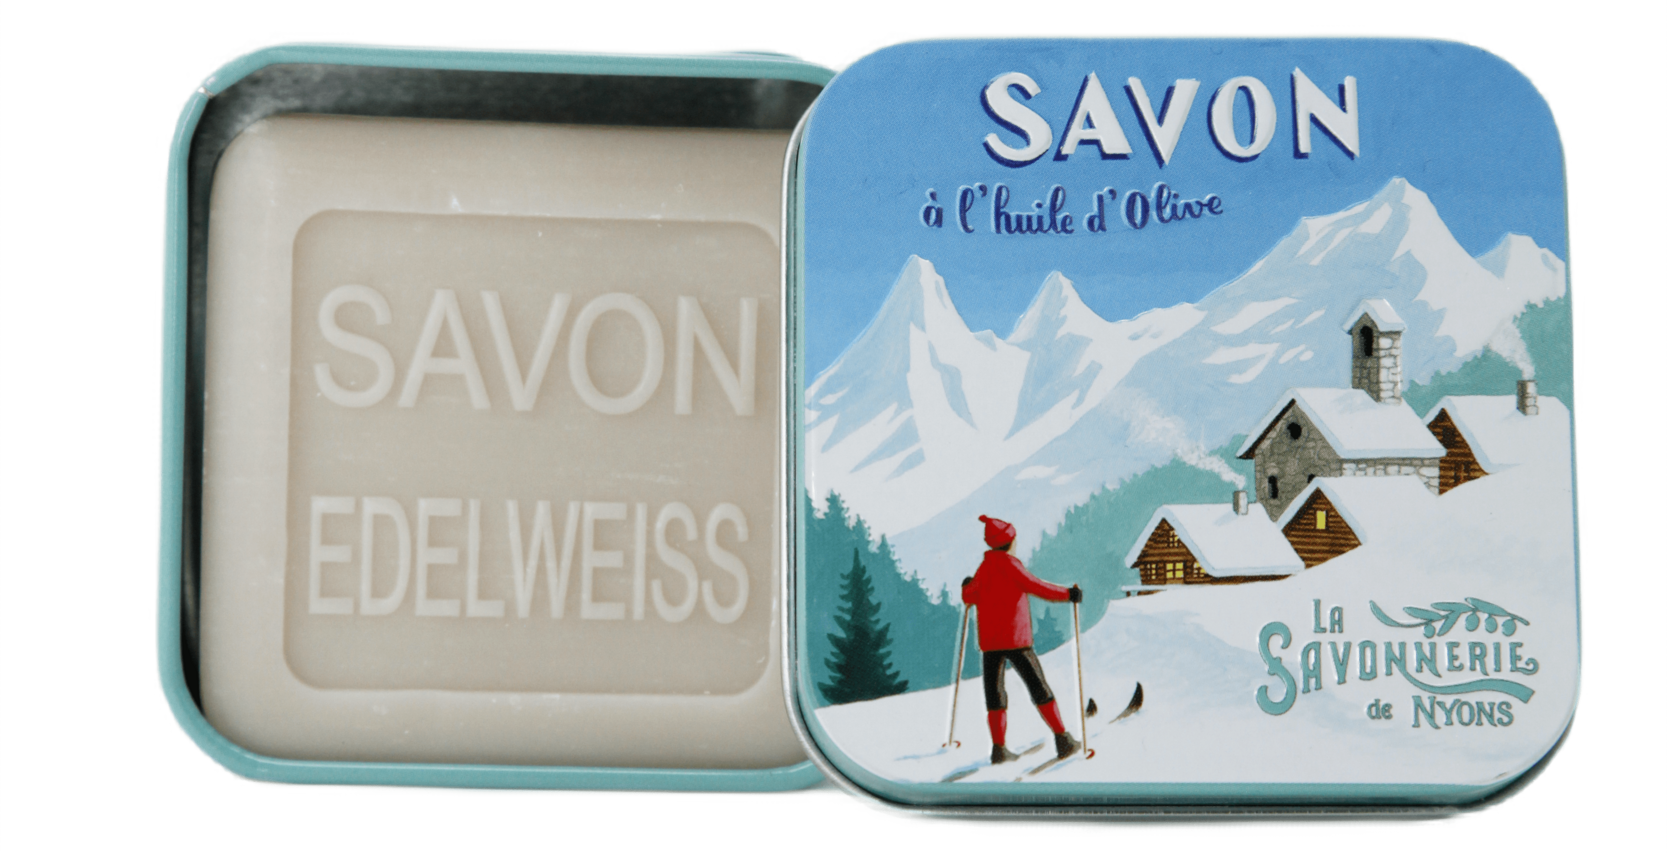 3.5oz Edelweiss Soap in ski touring Tin Box